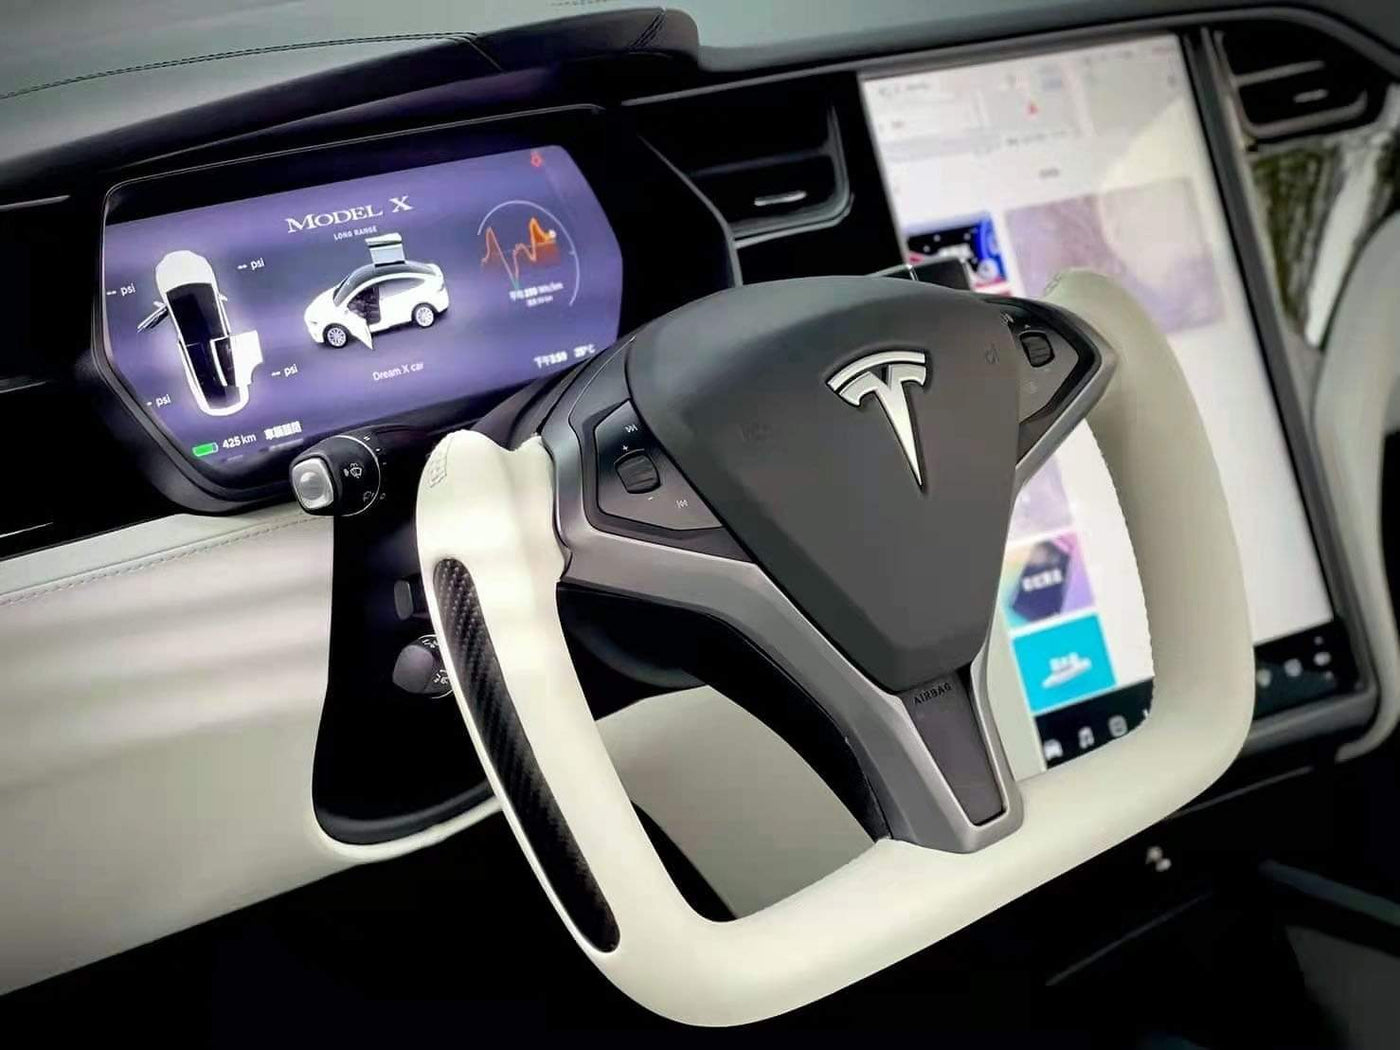 Custom Dry Carbon Fiber Yoke Steering Wheel for Tesla Model S